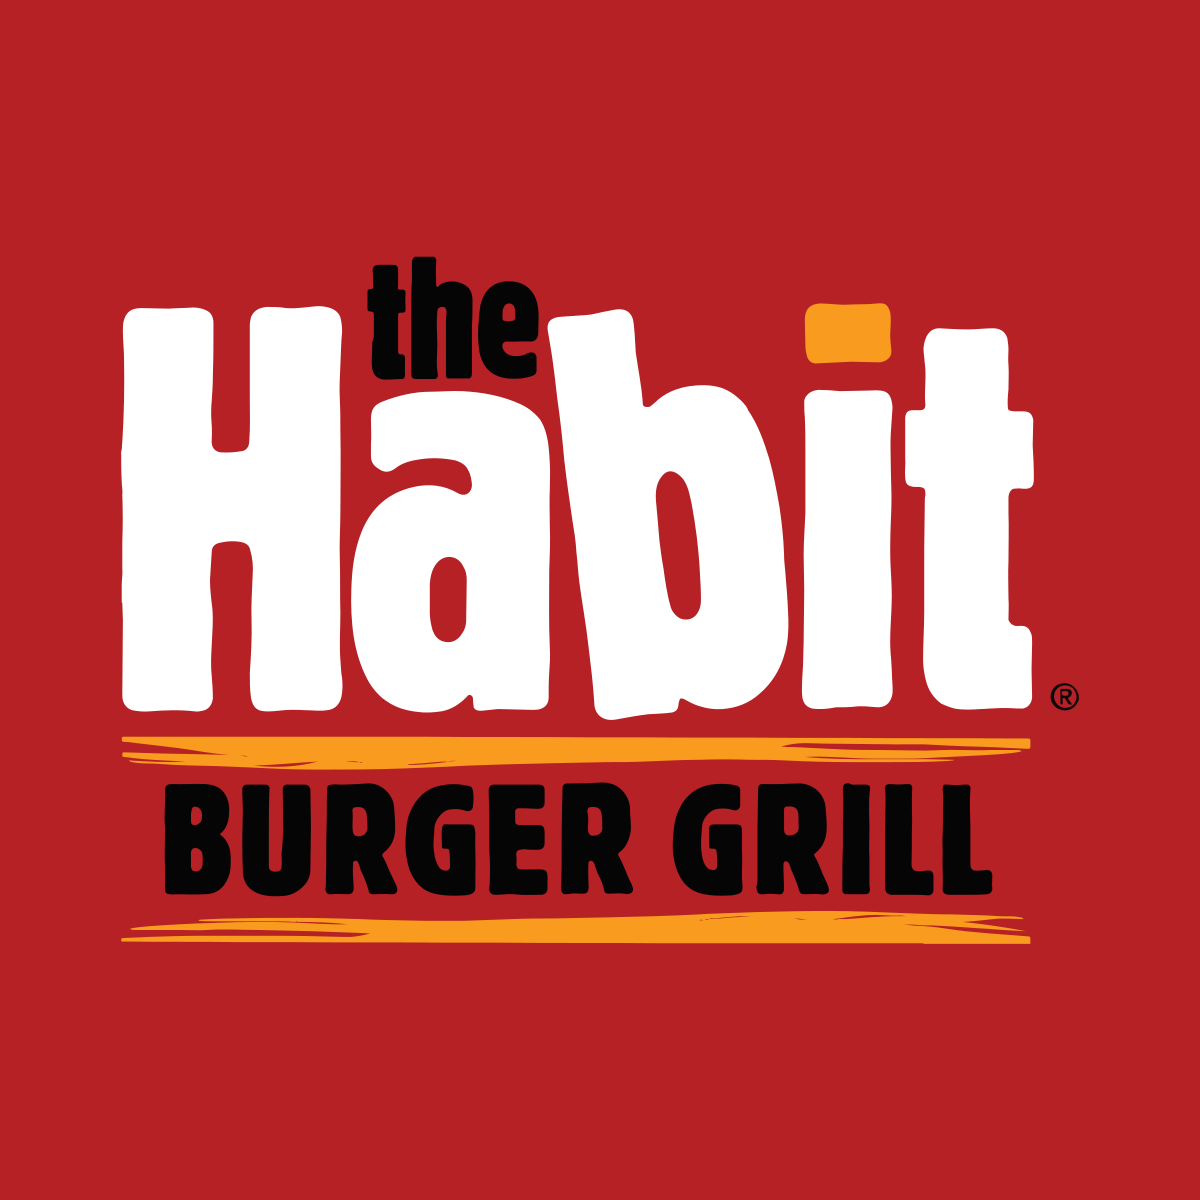 Habit Burger